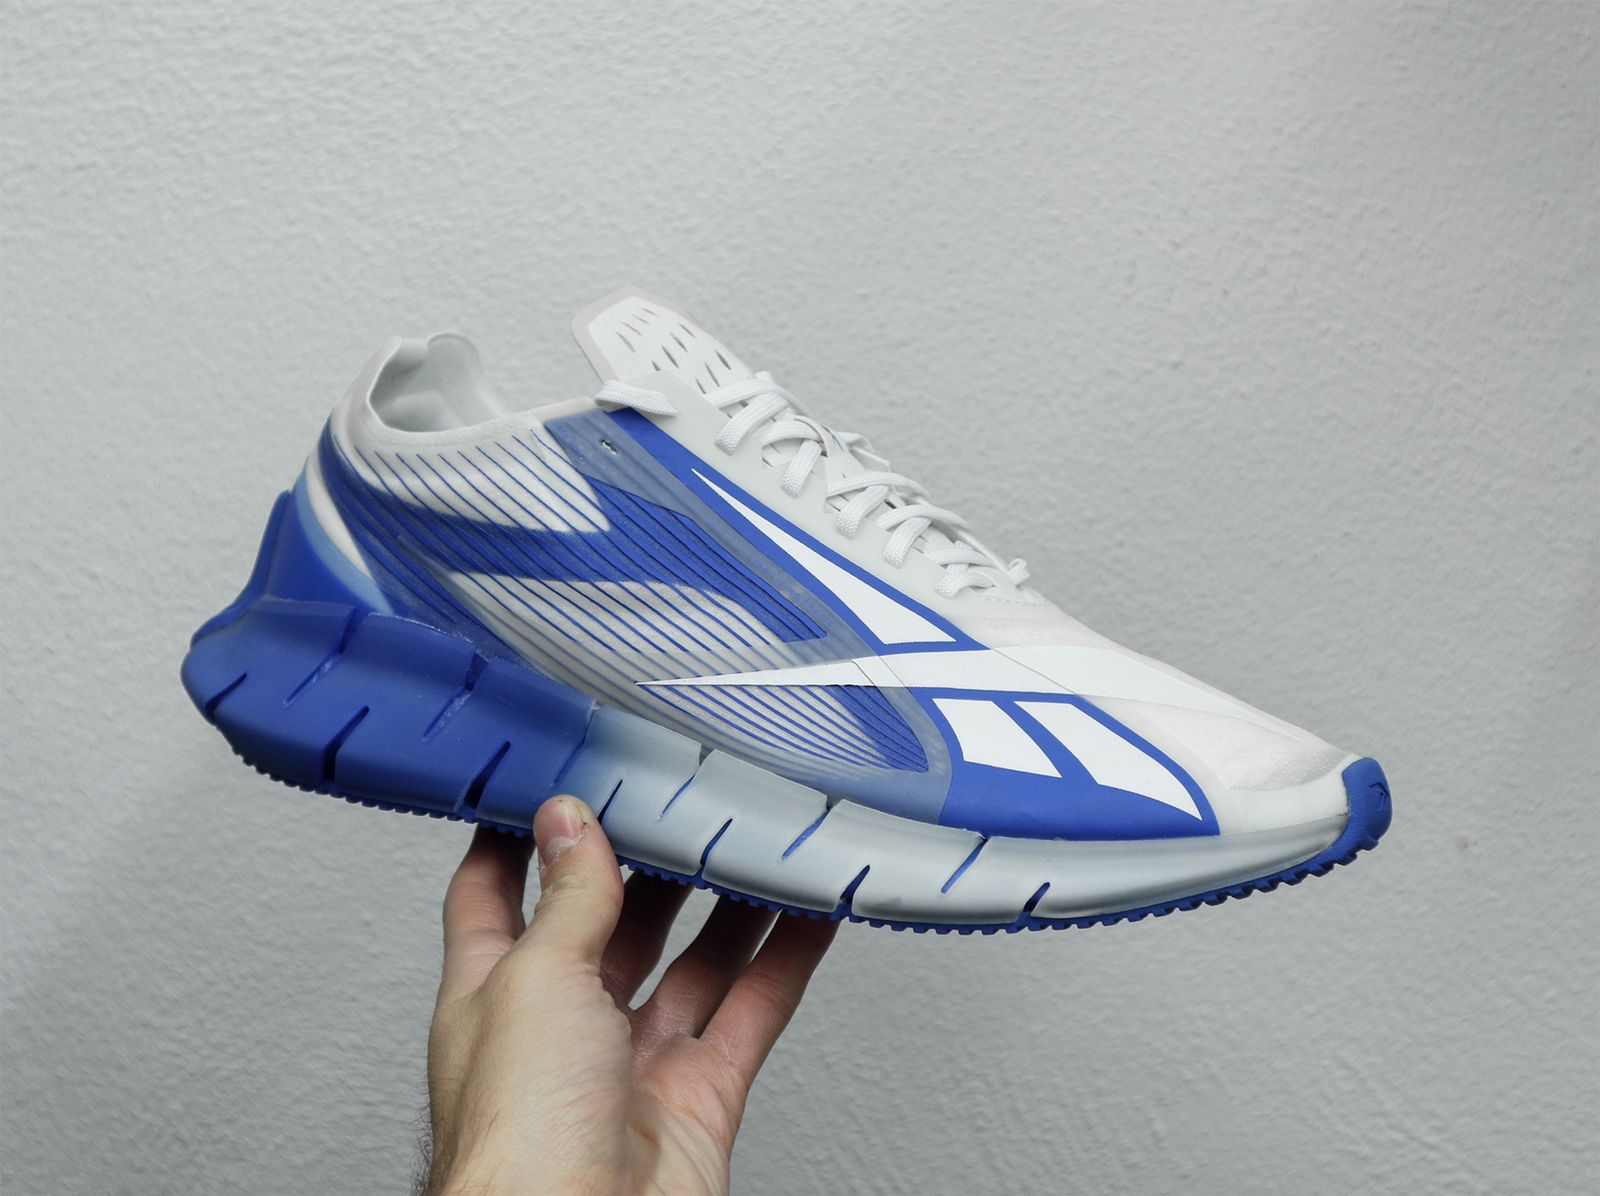 Reebok Zig 3D Storm Shoe On Sale